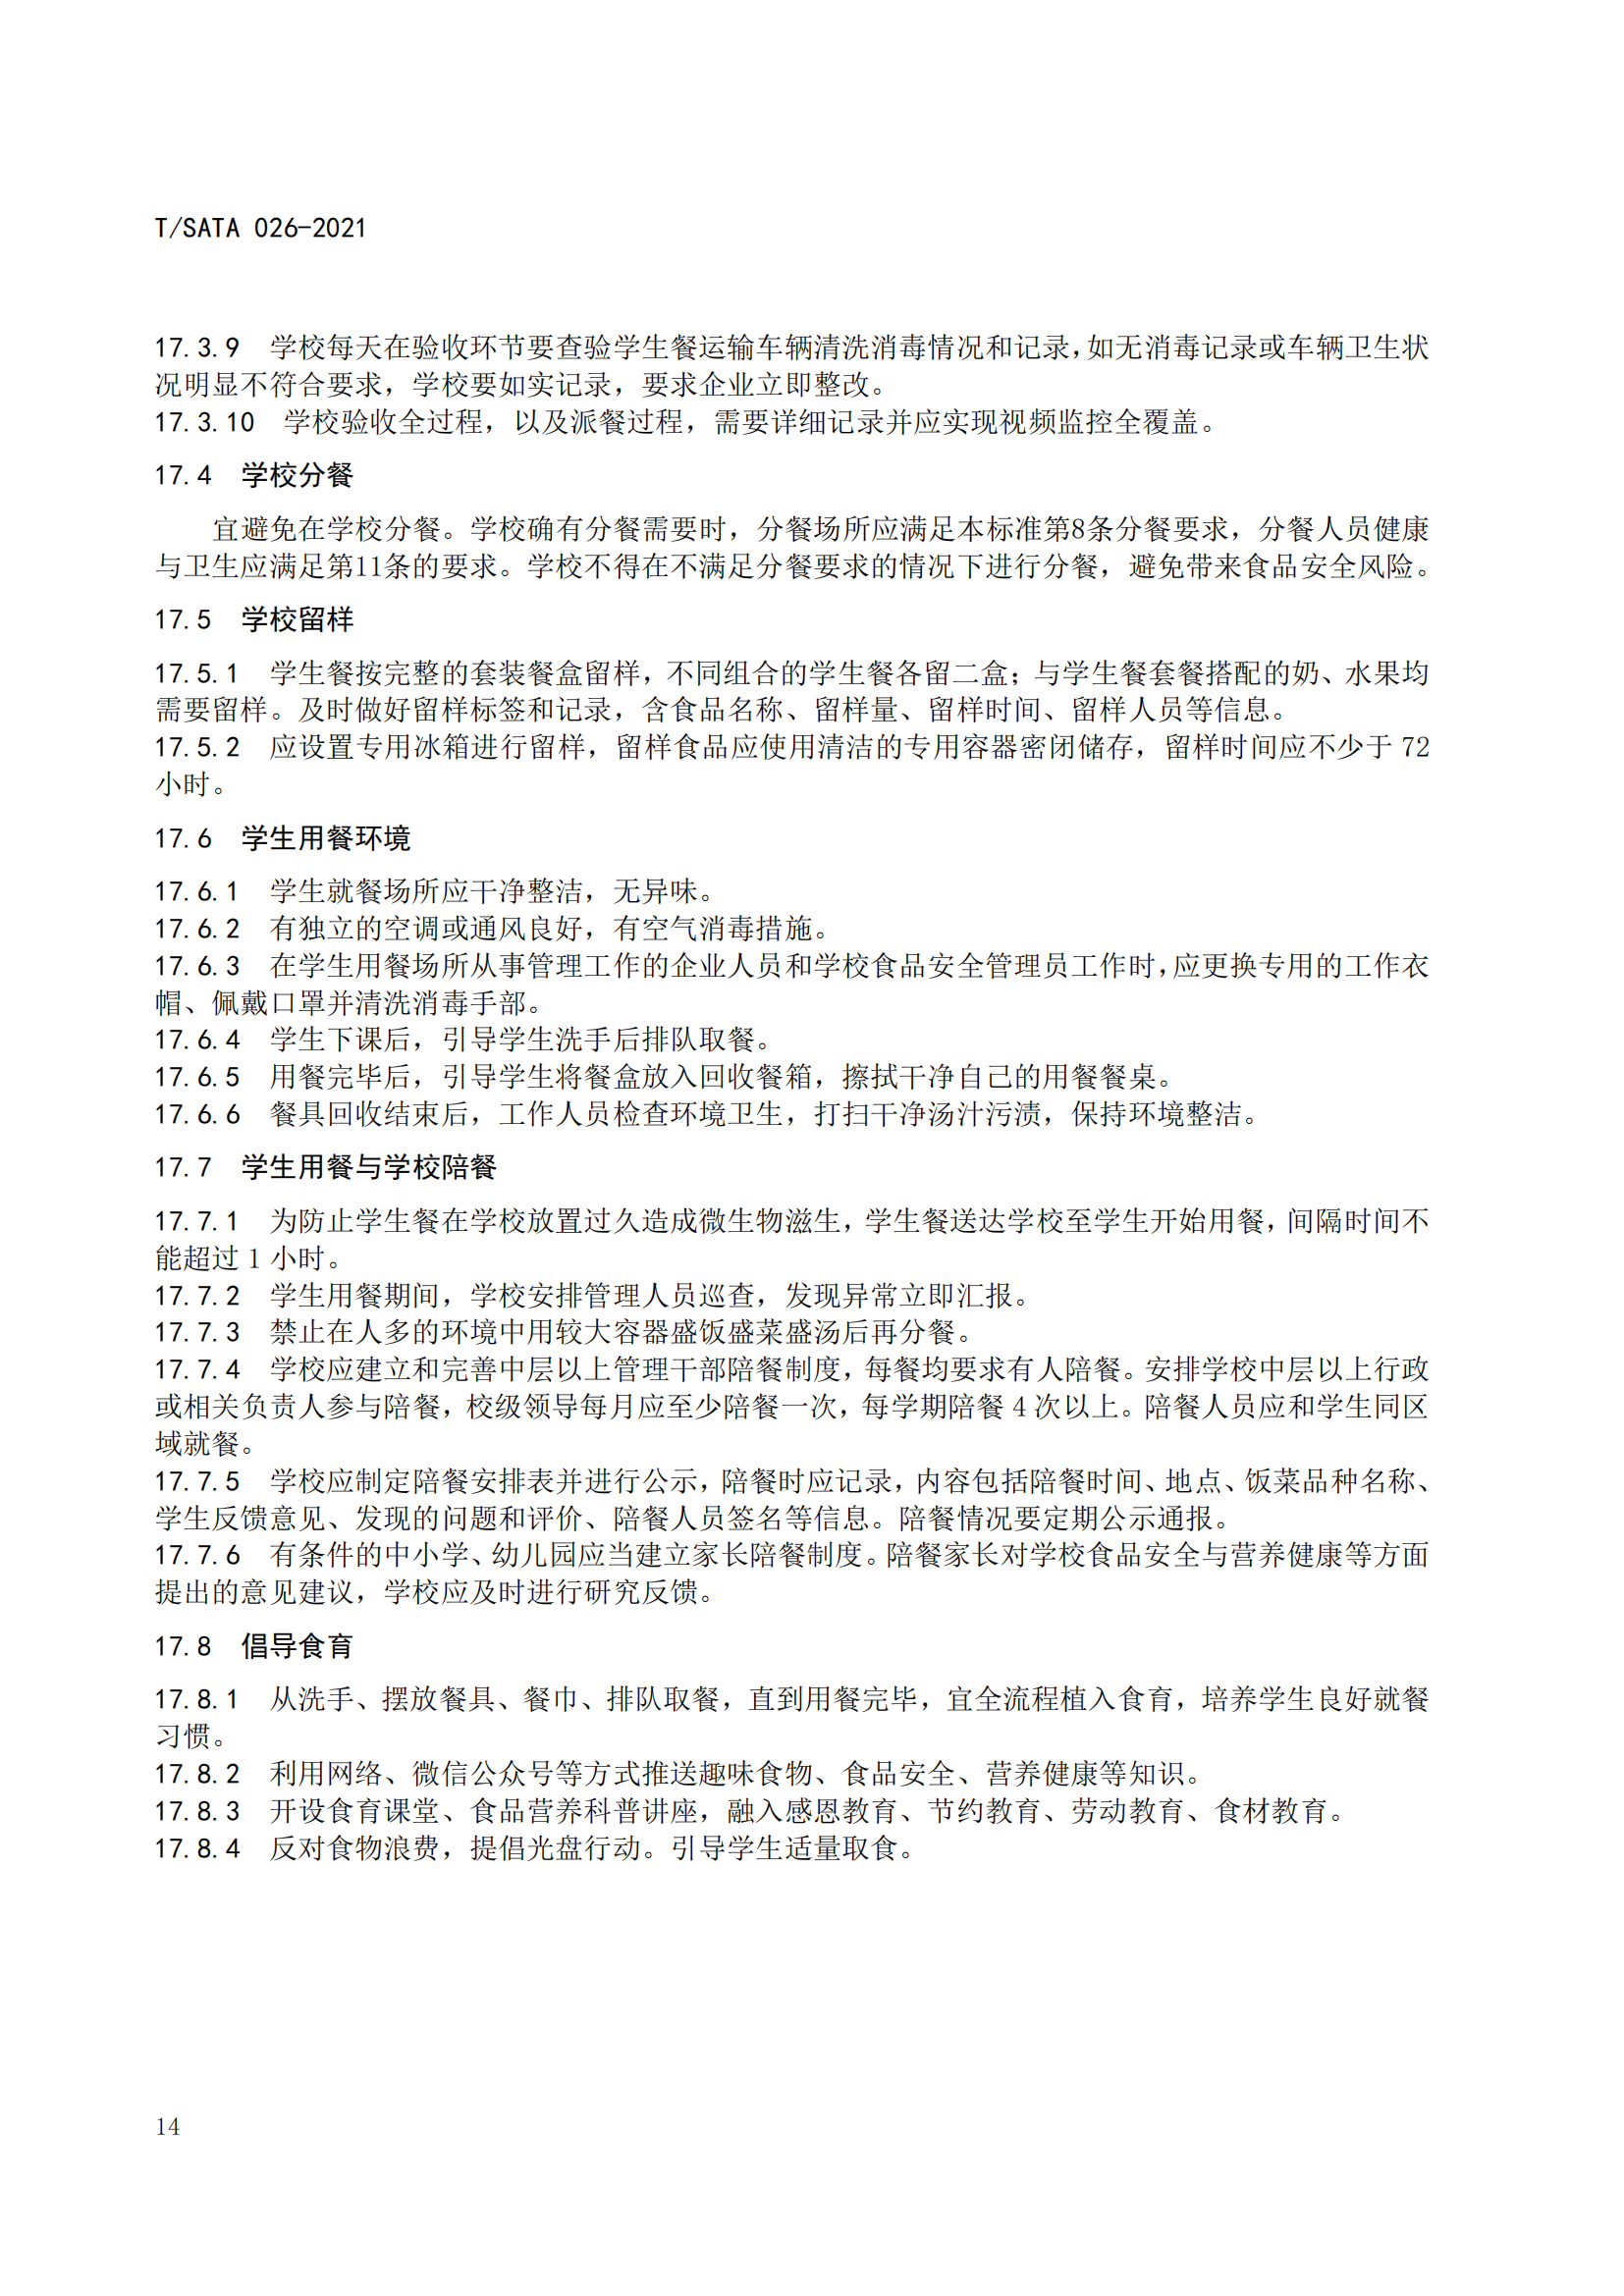 《深圳市校外集中配送学生餐操作规范》团体标准（发布版）2021.11.18终_16.png